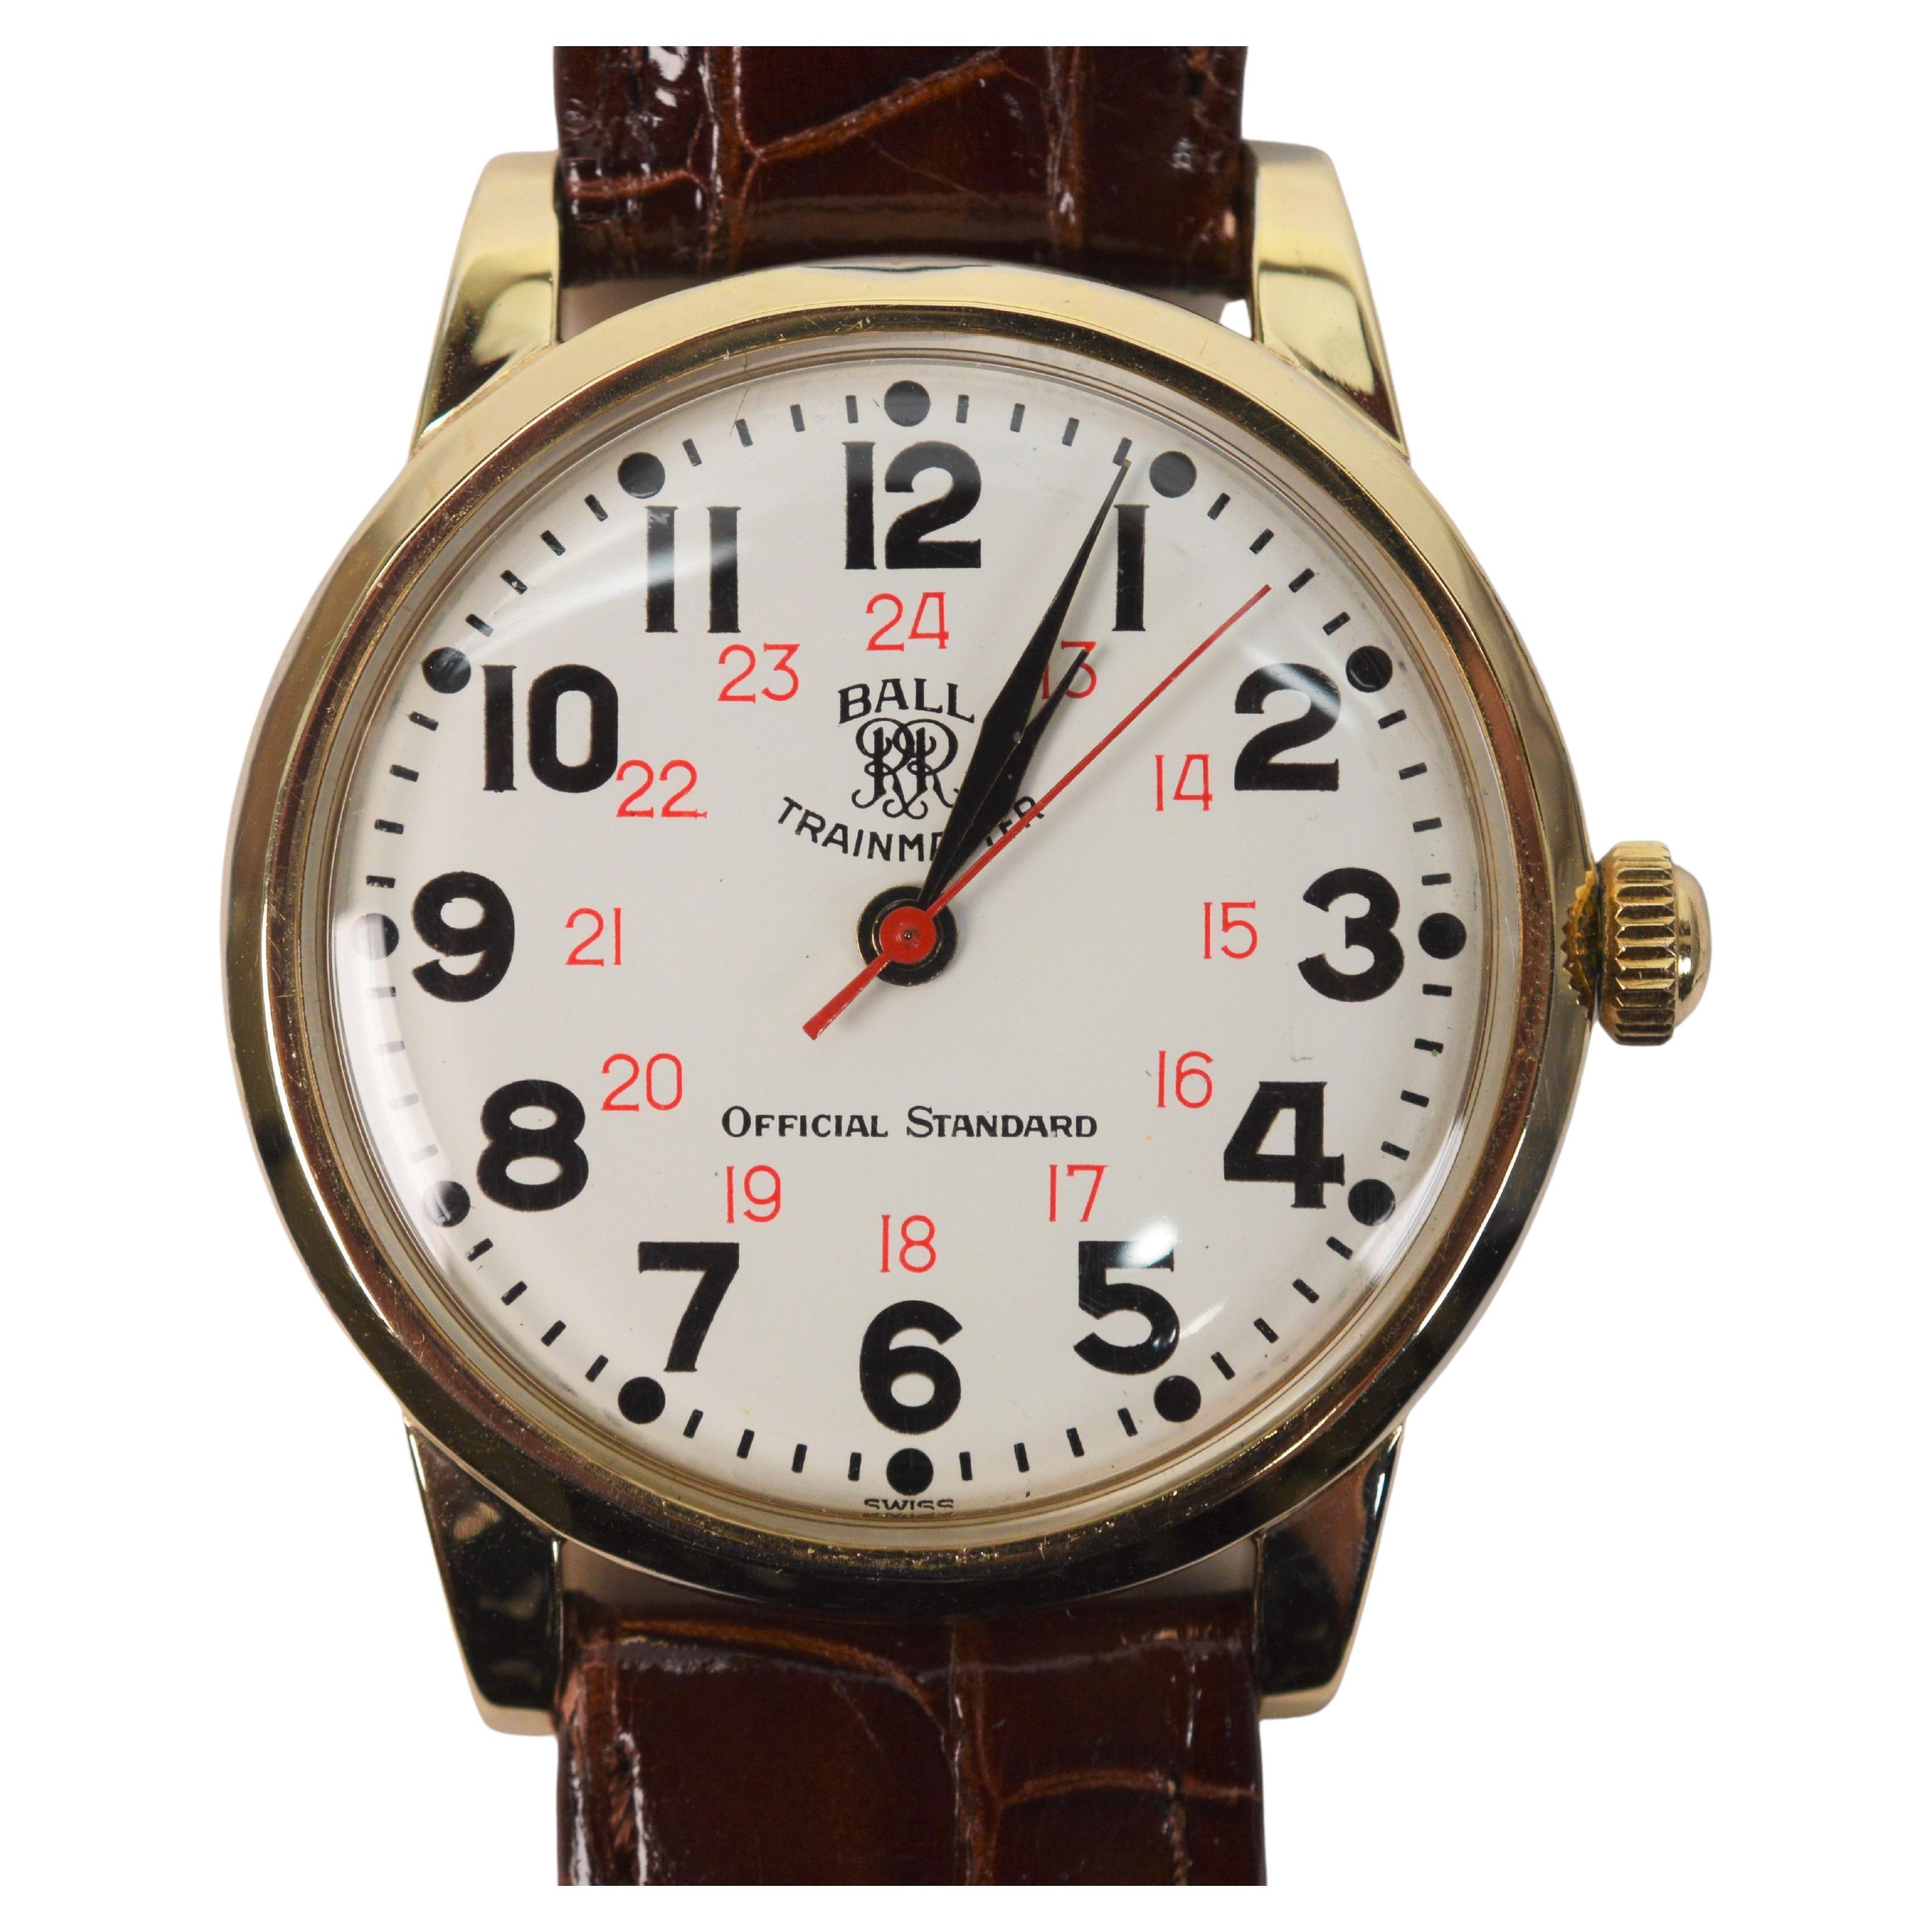 Ball Watch Co. Trainmaster Official Standard Men's Wrist Watch